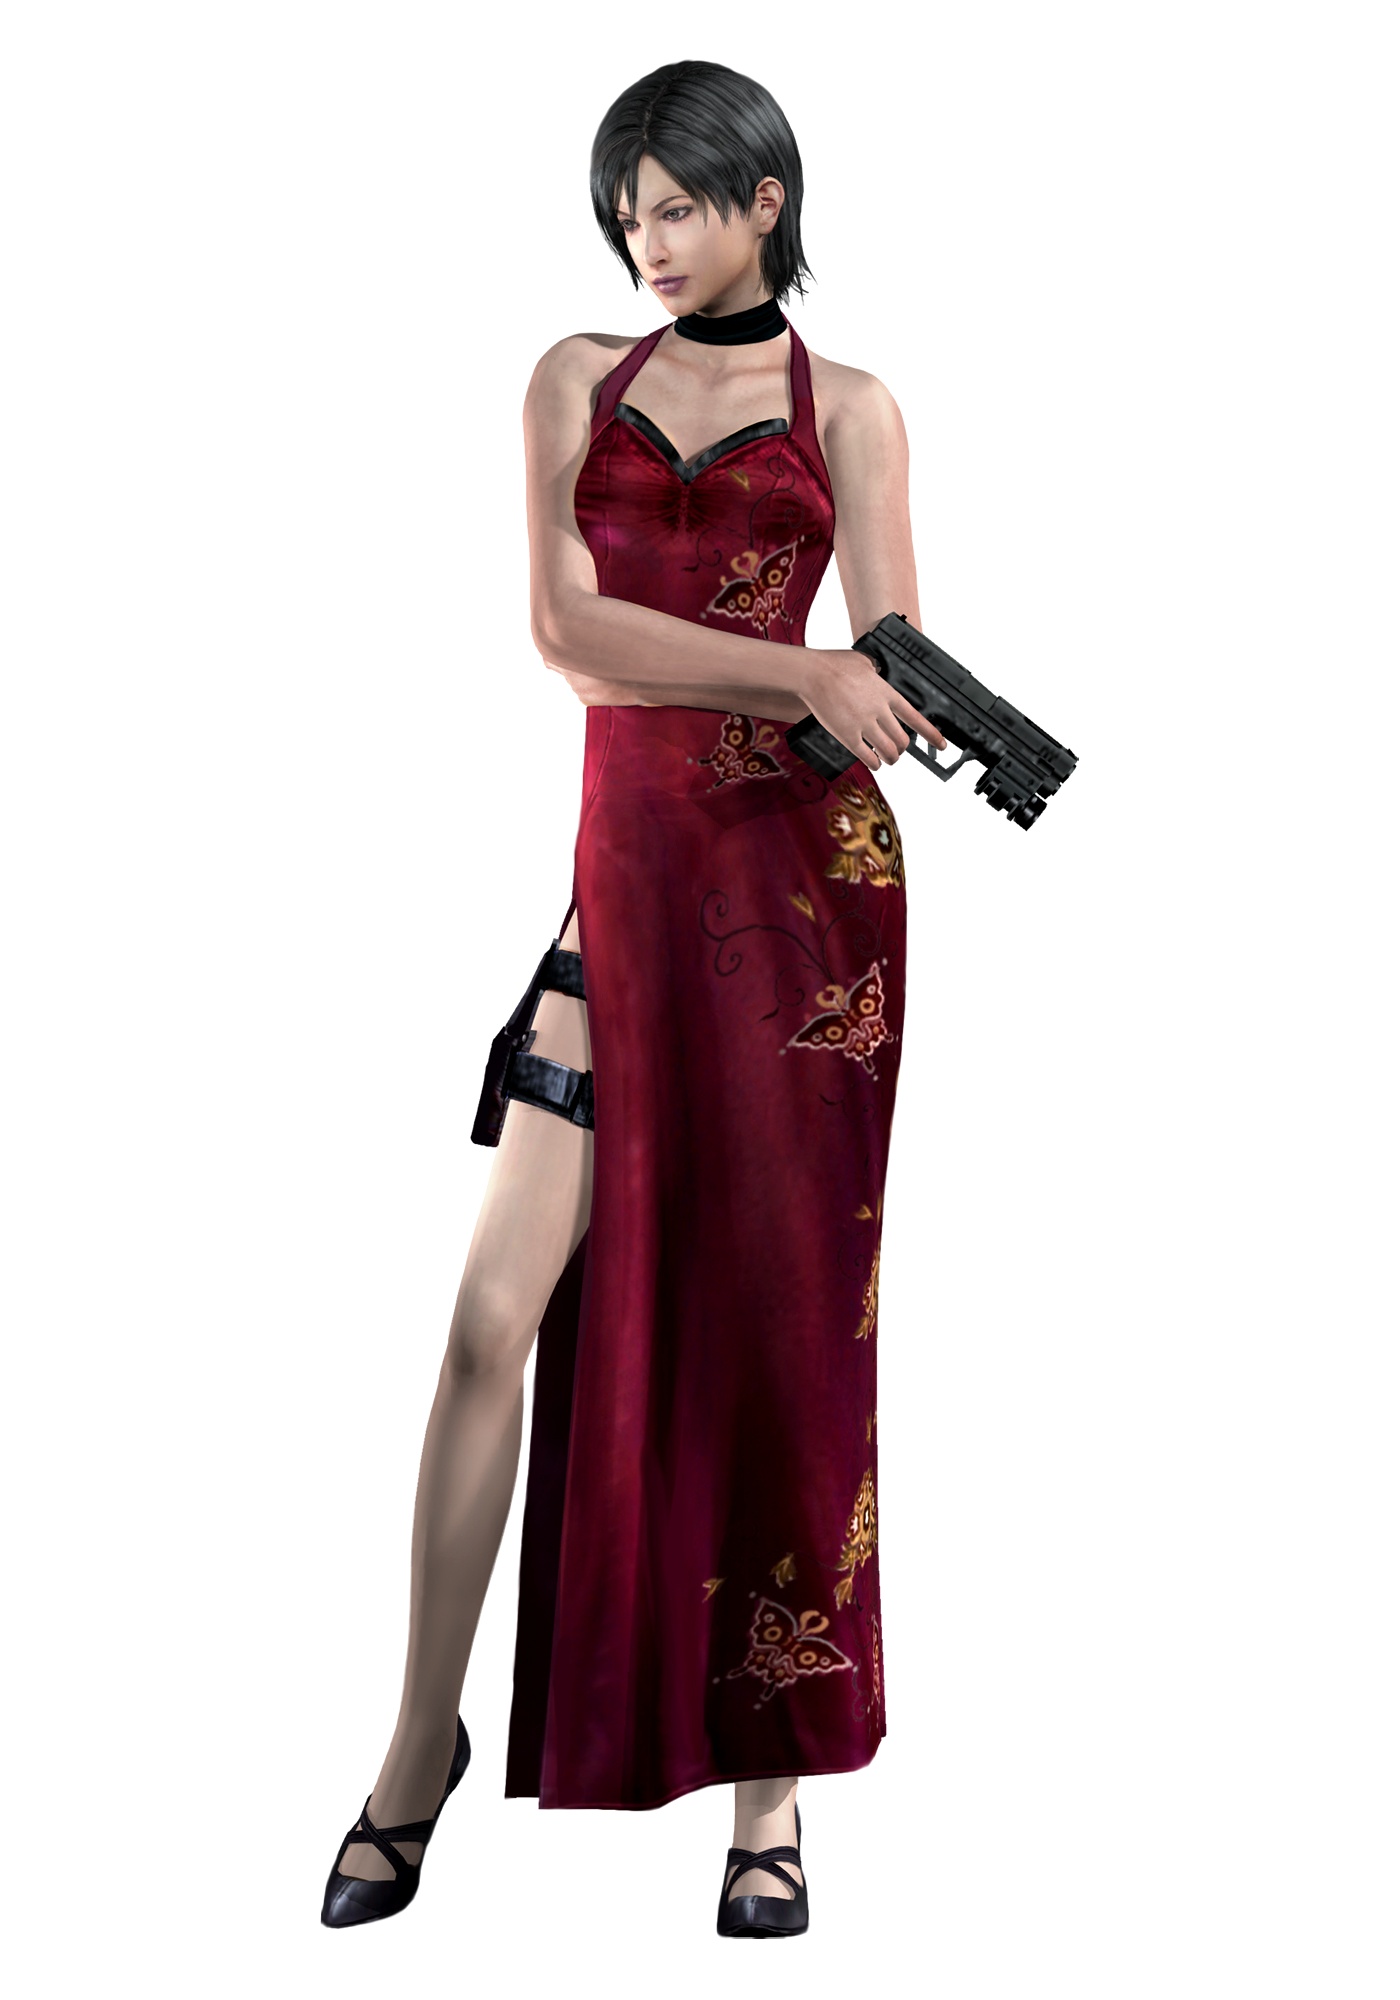 Resident Evil Ada Wong Video Games Resident Evil Hd - Ada Resident Evil 4 - HD Wallpaper 